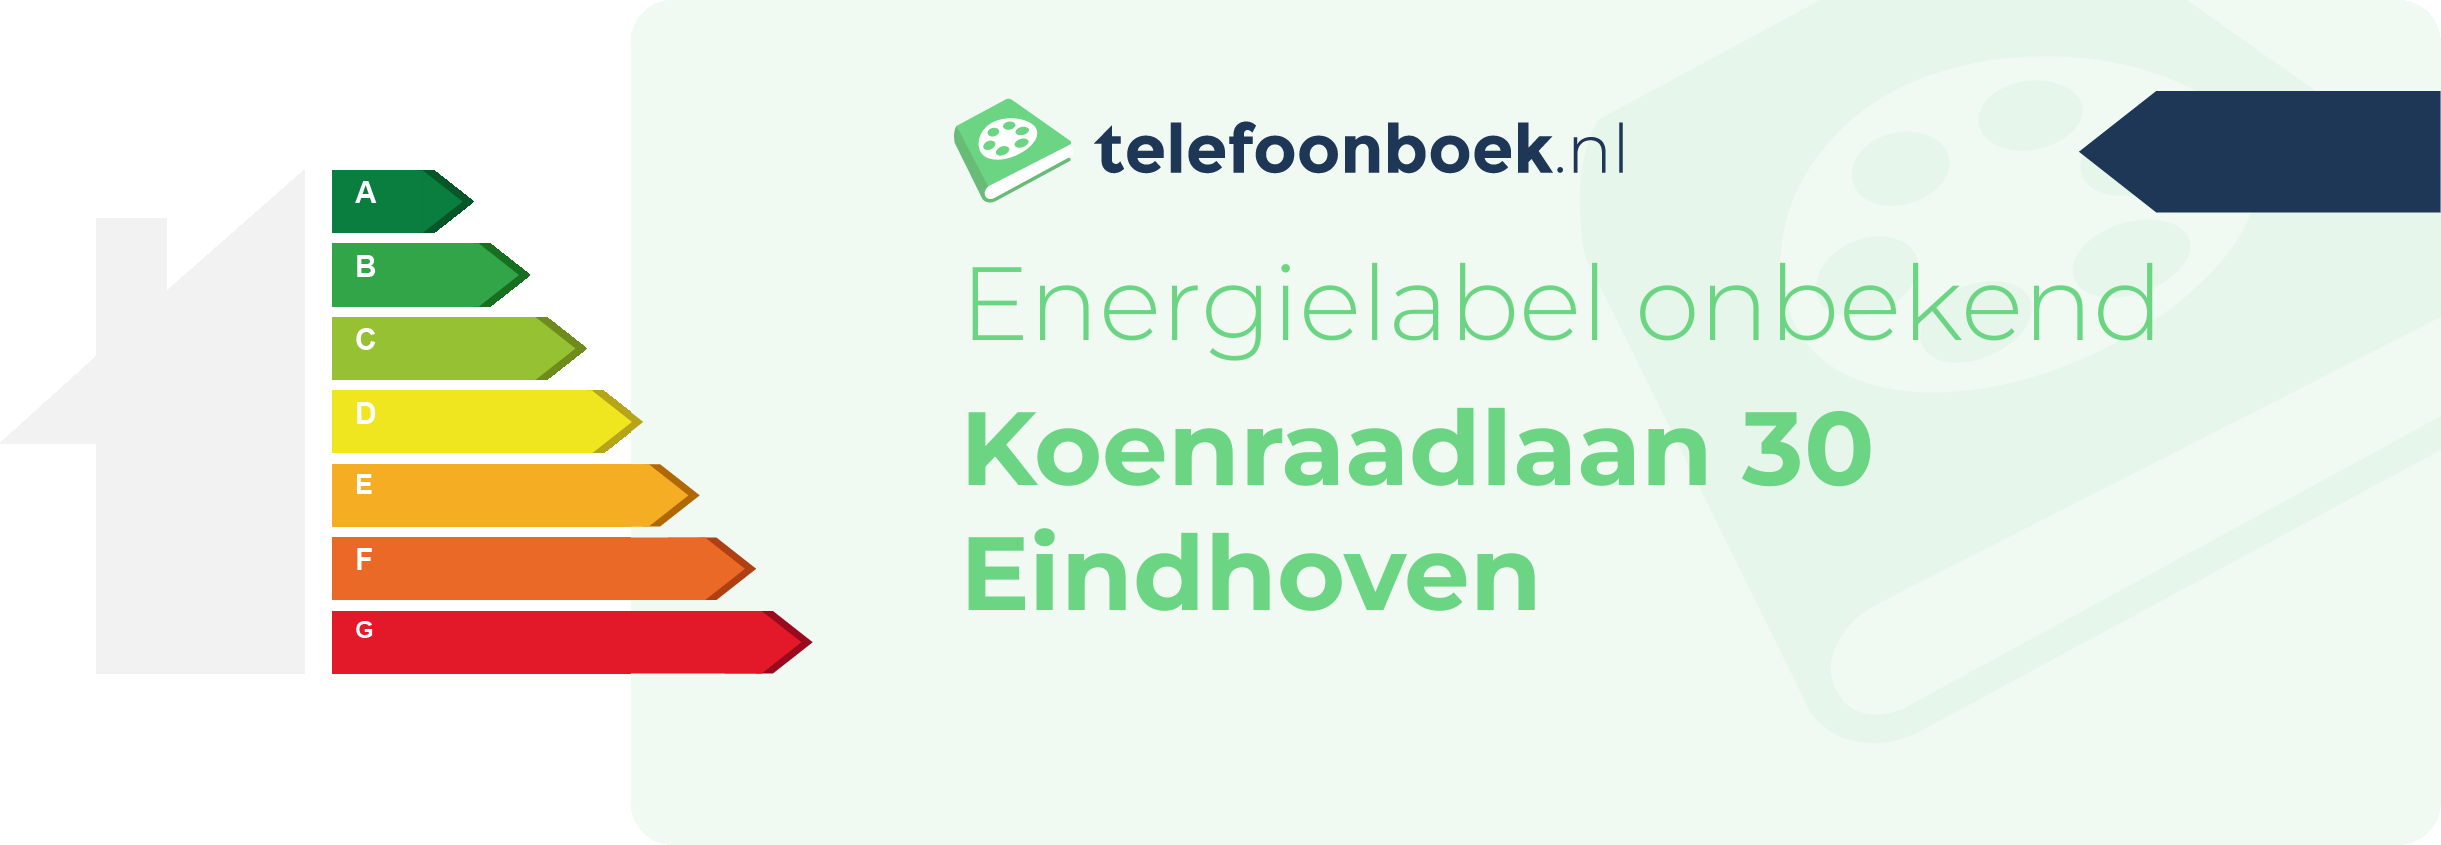 Energielabel Koenraadlaan 30 Eindhoven